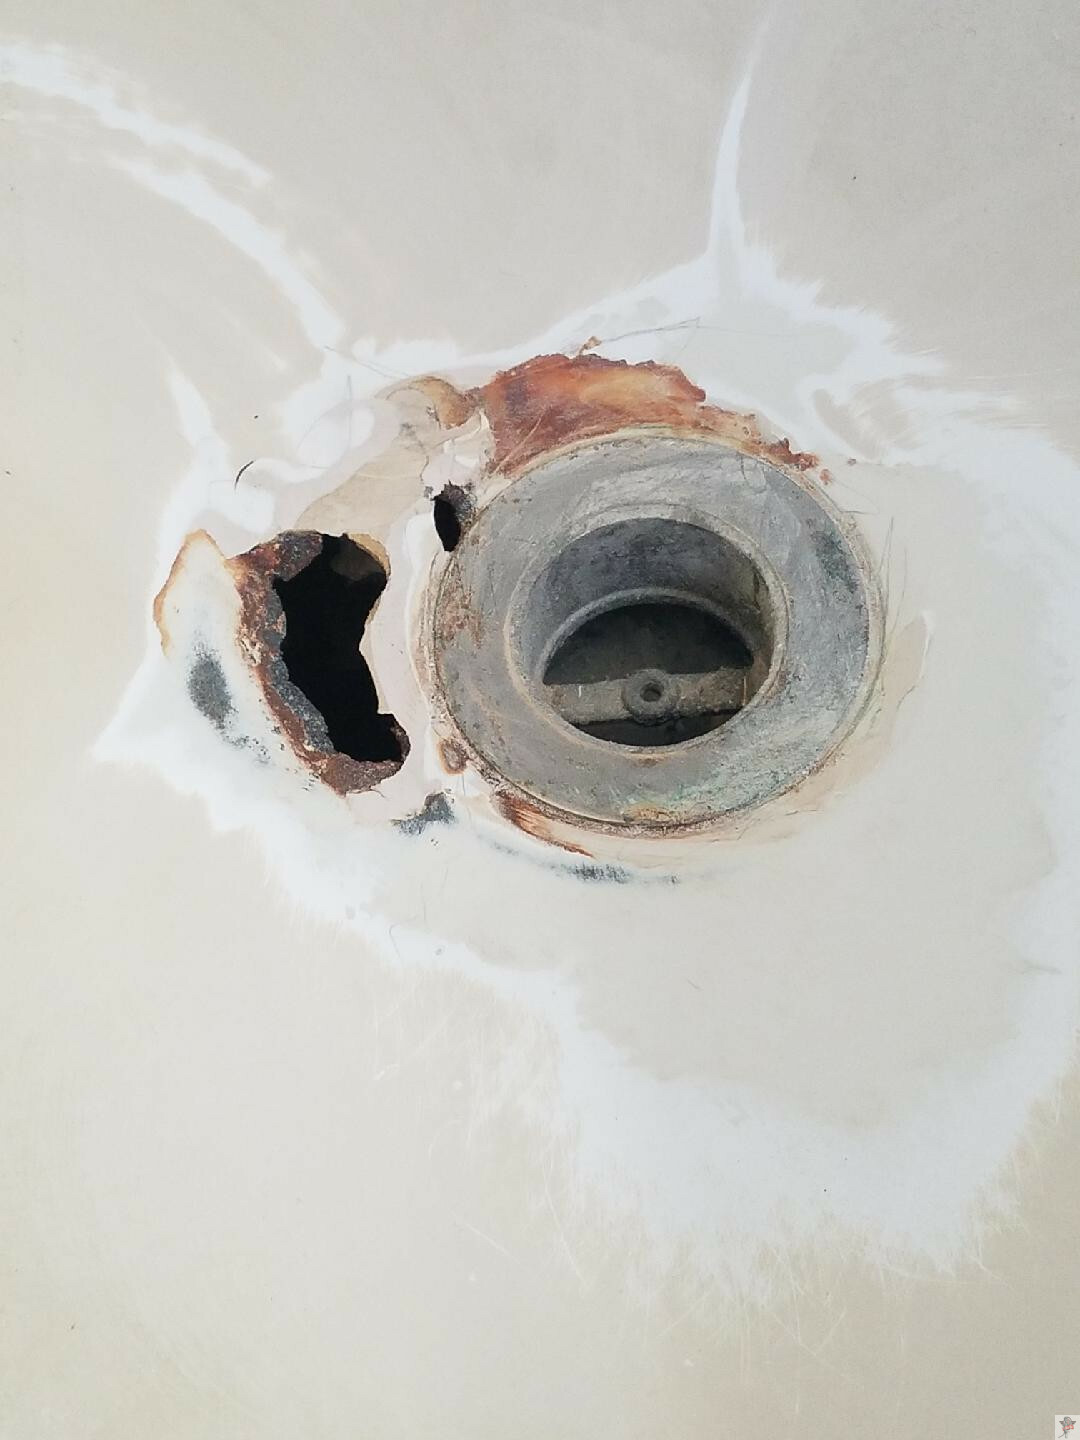 Tub Refinishing Repair Rust More, How To Repair Rusted Bathtub Drain Pipe